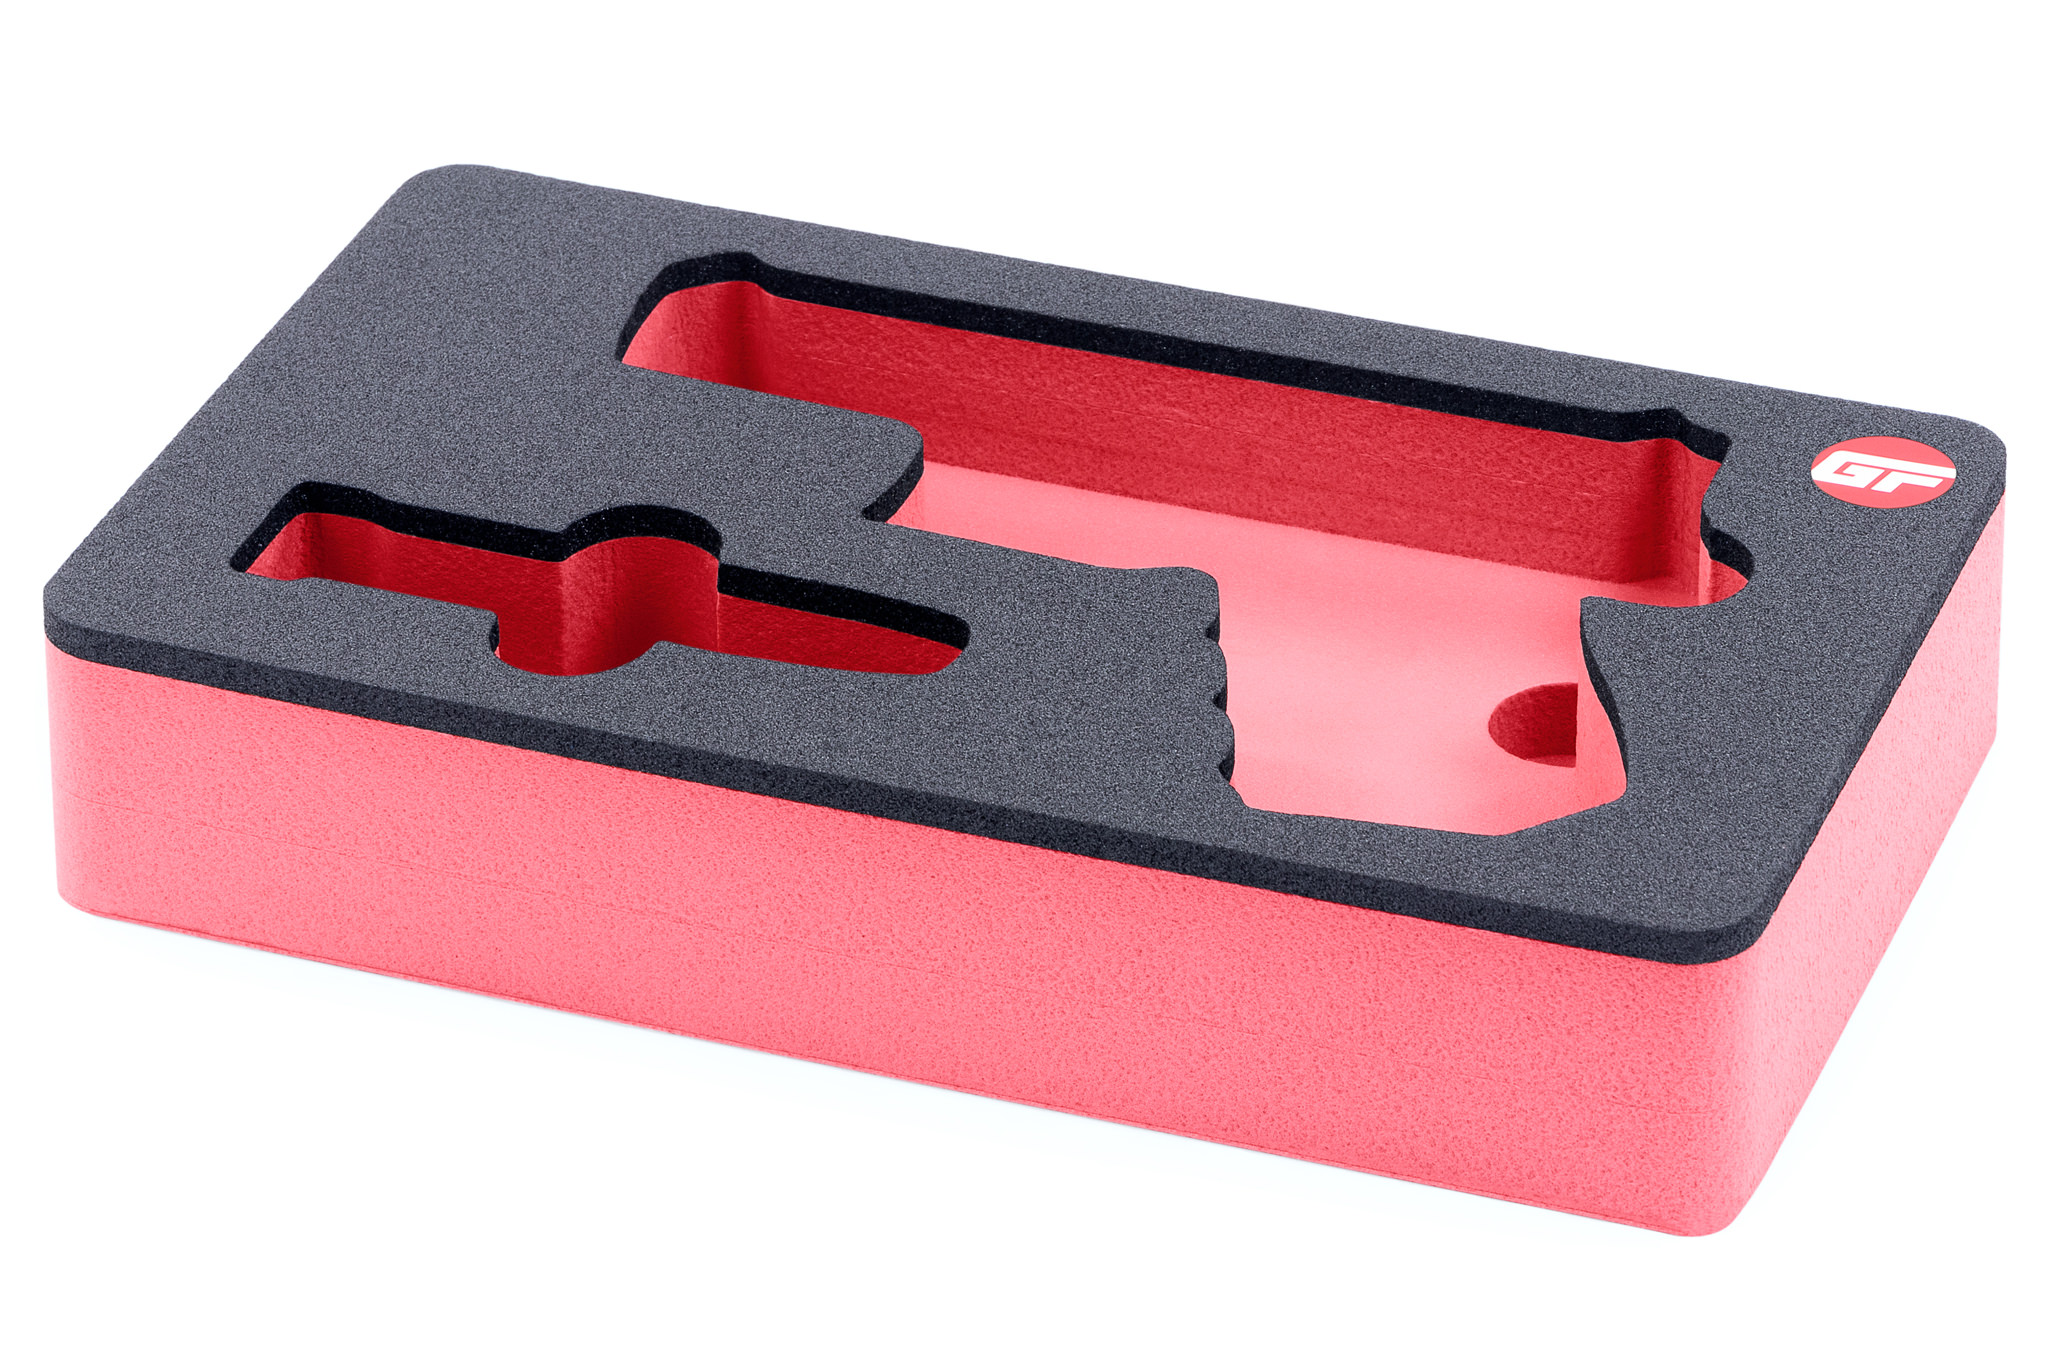 Red Foam Insert for pistol in Pelican 1170 case 